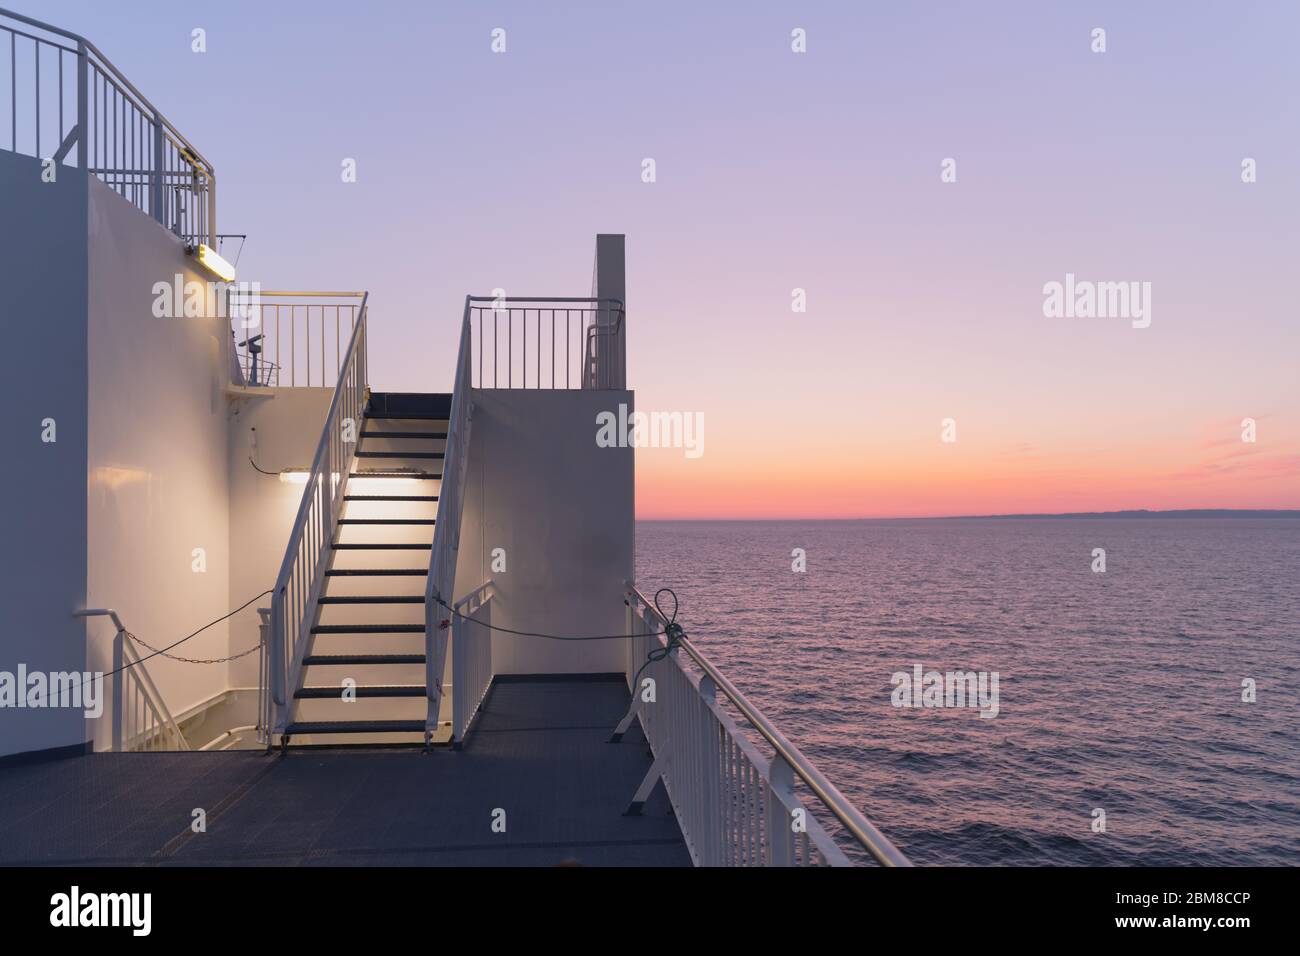 Deck eines Kreuzfahrtschiffes bei Sonnenuntergang. Ruhiges Meer und klarer rosa Himmel am Abend. Kreuzfahrt Urlaub Hintergrund. Minimalismus in der Fotografie Stockfoto